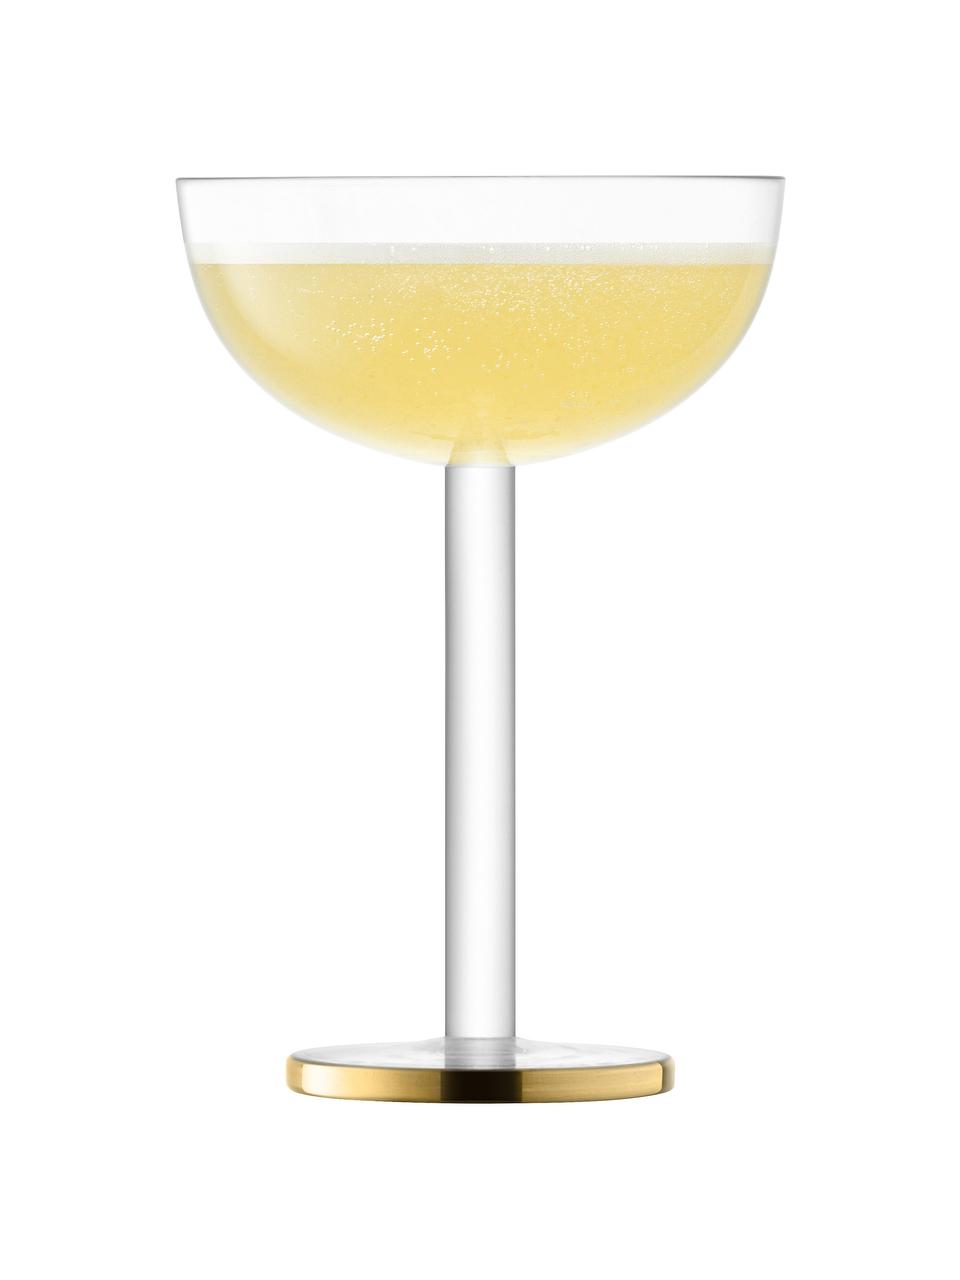 Mundgeblasene Champagnerschalen Luca, 2 Stück, Glas, Transparent mit Goldrand, Ø 11 x H 15 cm, 200 ml